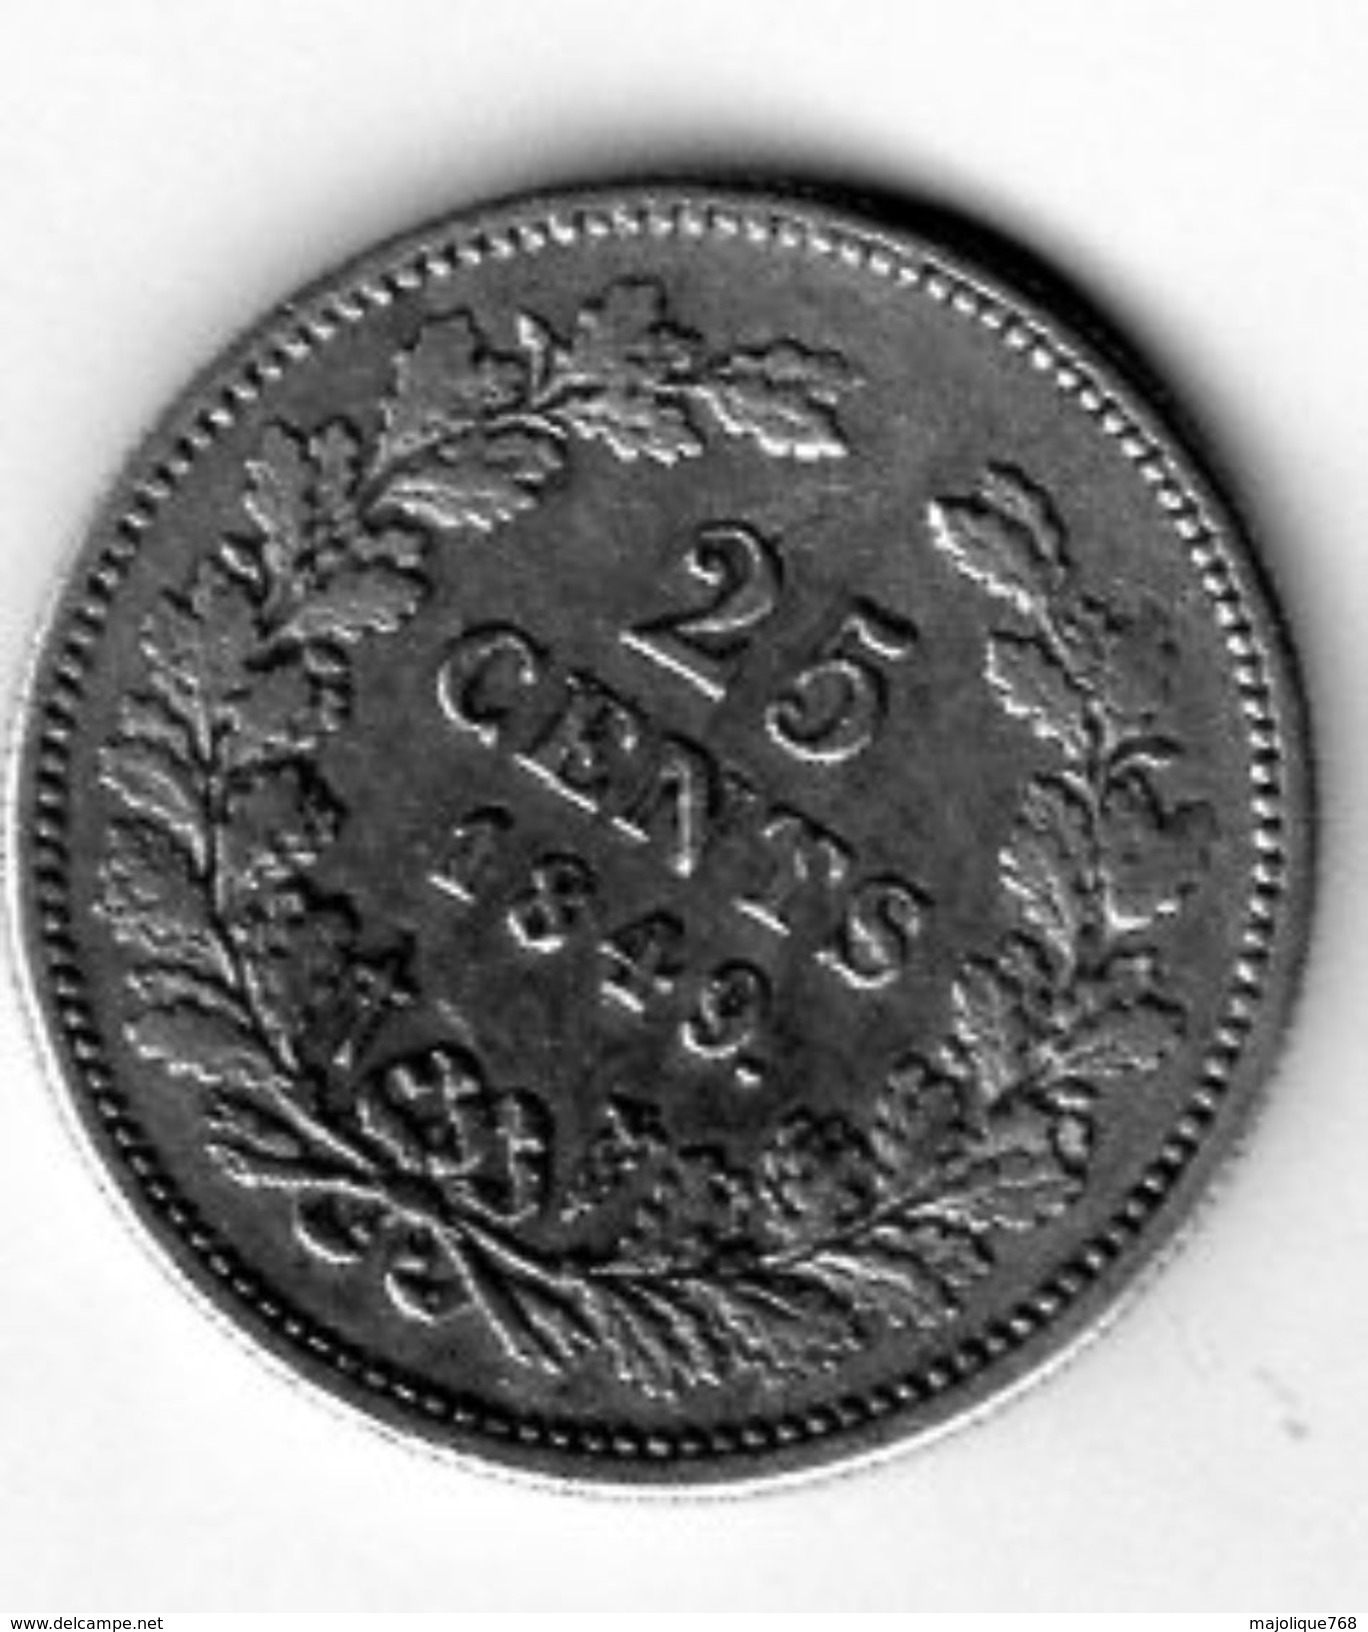 Pièce De Monnaie Du Pays-bas - 25 Cents Argent 1849 En T T B + - - 1840-1849 : Willem II